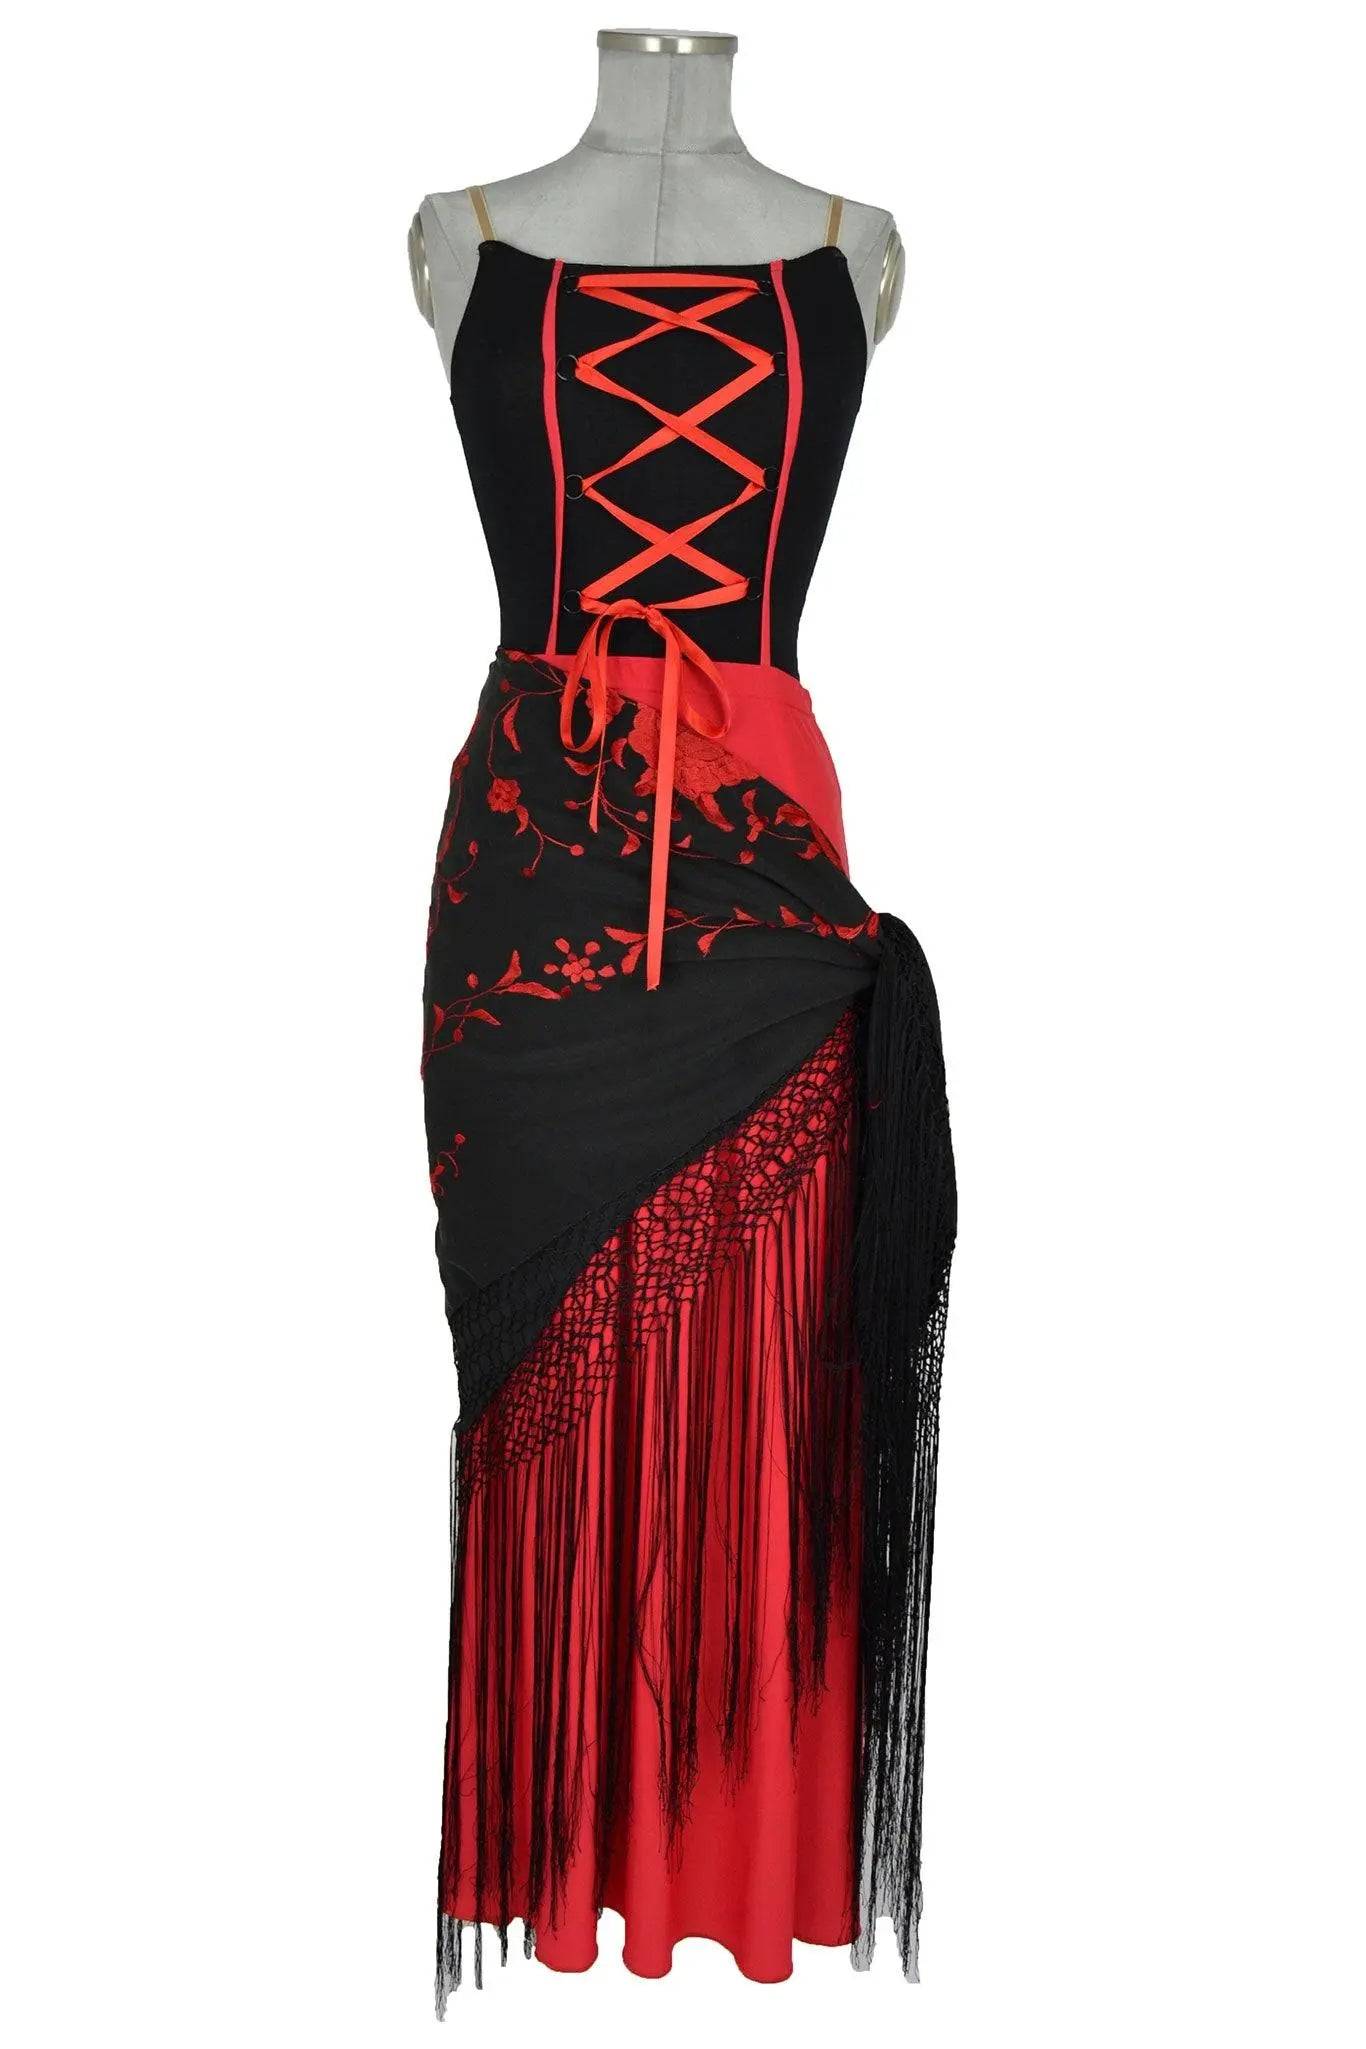 Costume donna stile spagnolo per zingare, popolane o danza come Carmen